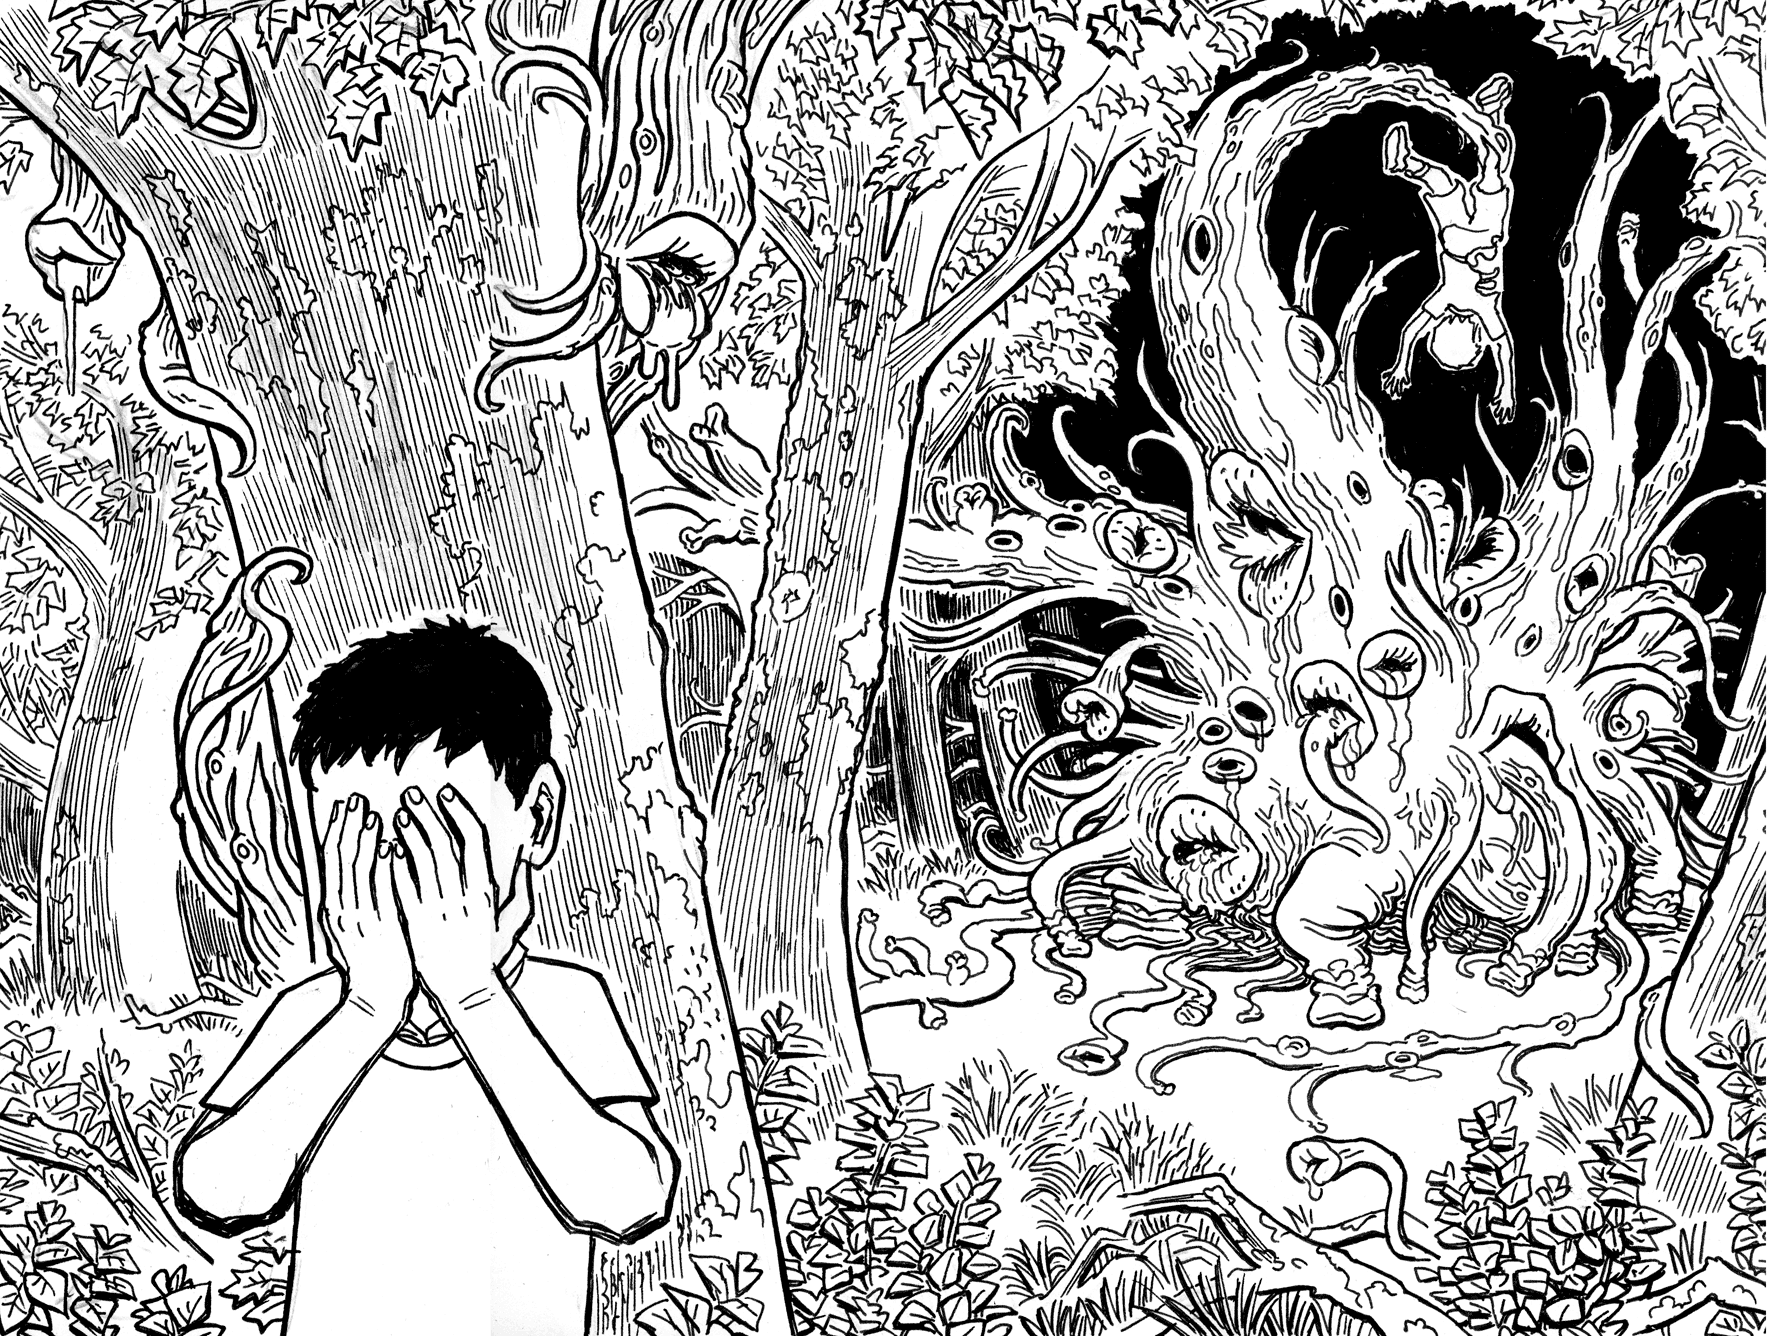 Lovecraft Sketch MWF: The Dark Young of Shub-Niggurath